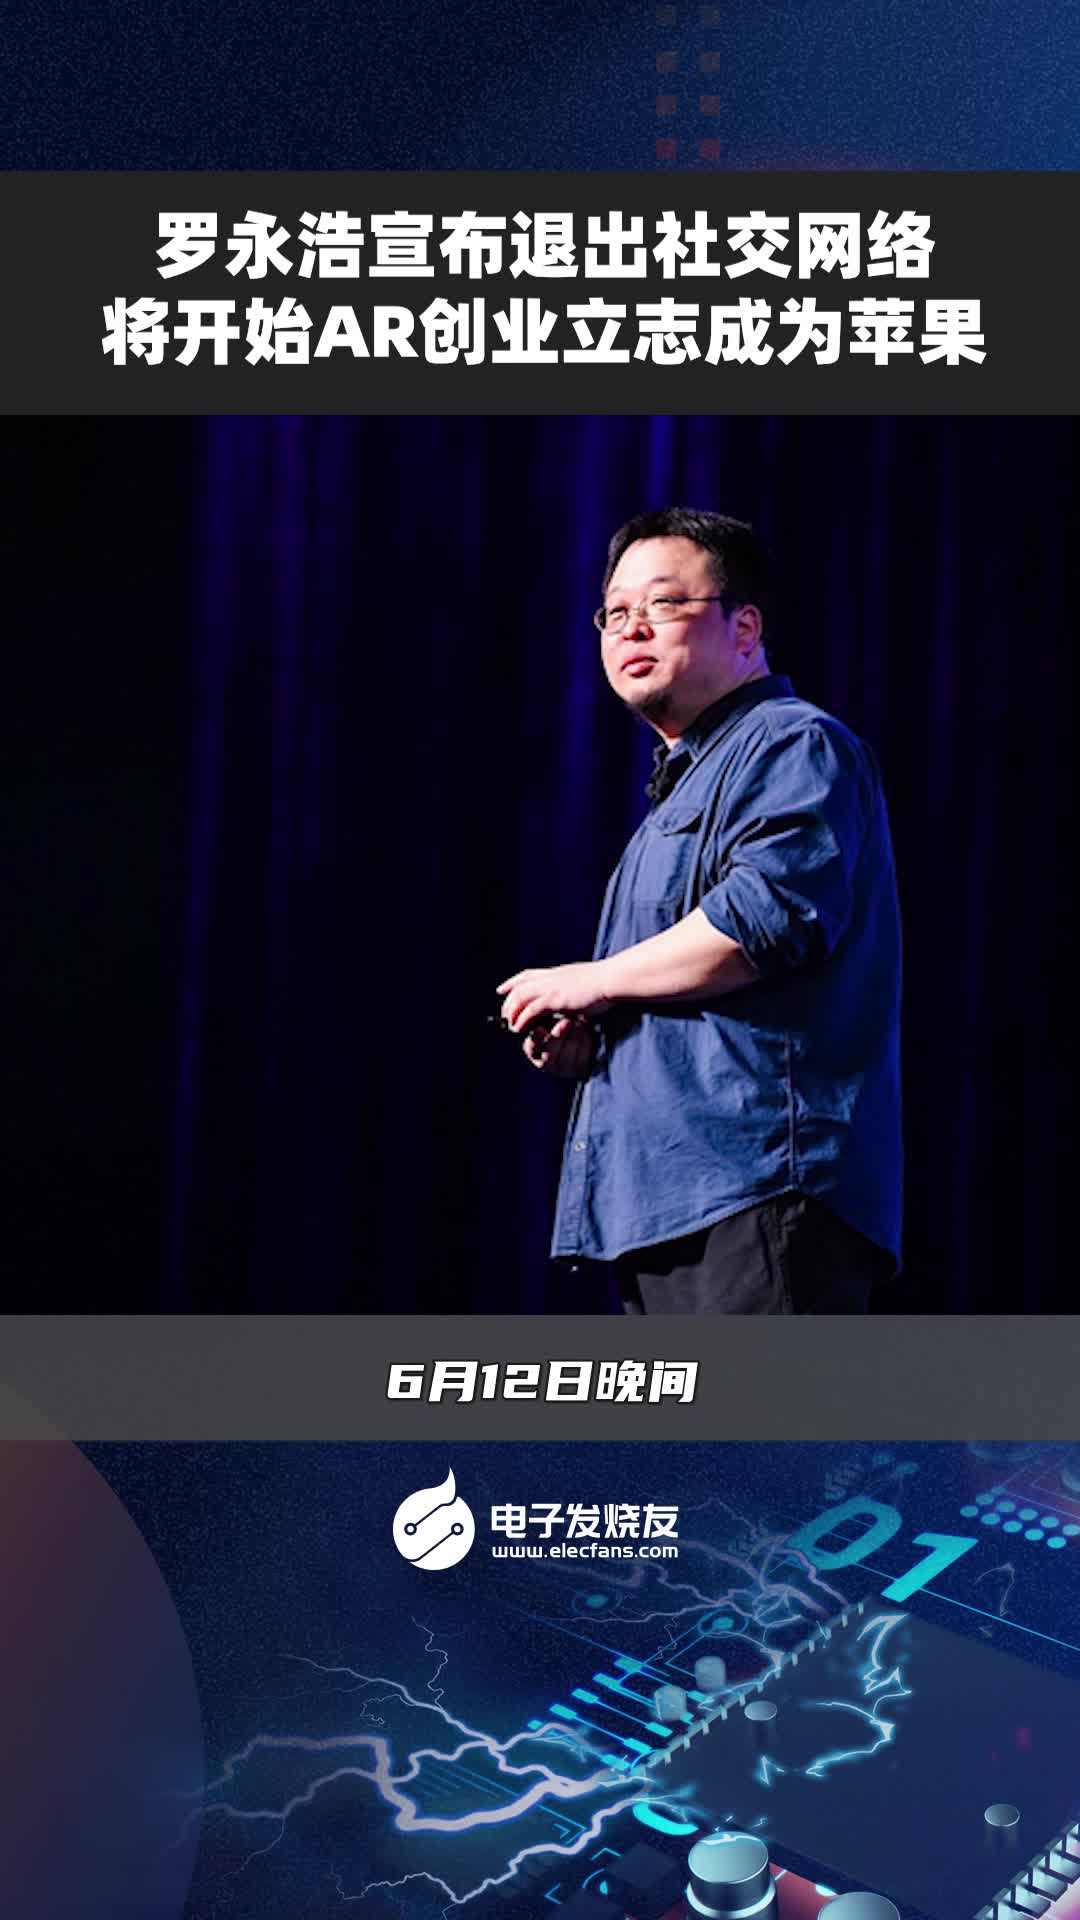 羅永浩宣布退出社交網絡，將開始AR創業立志成為蘋果